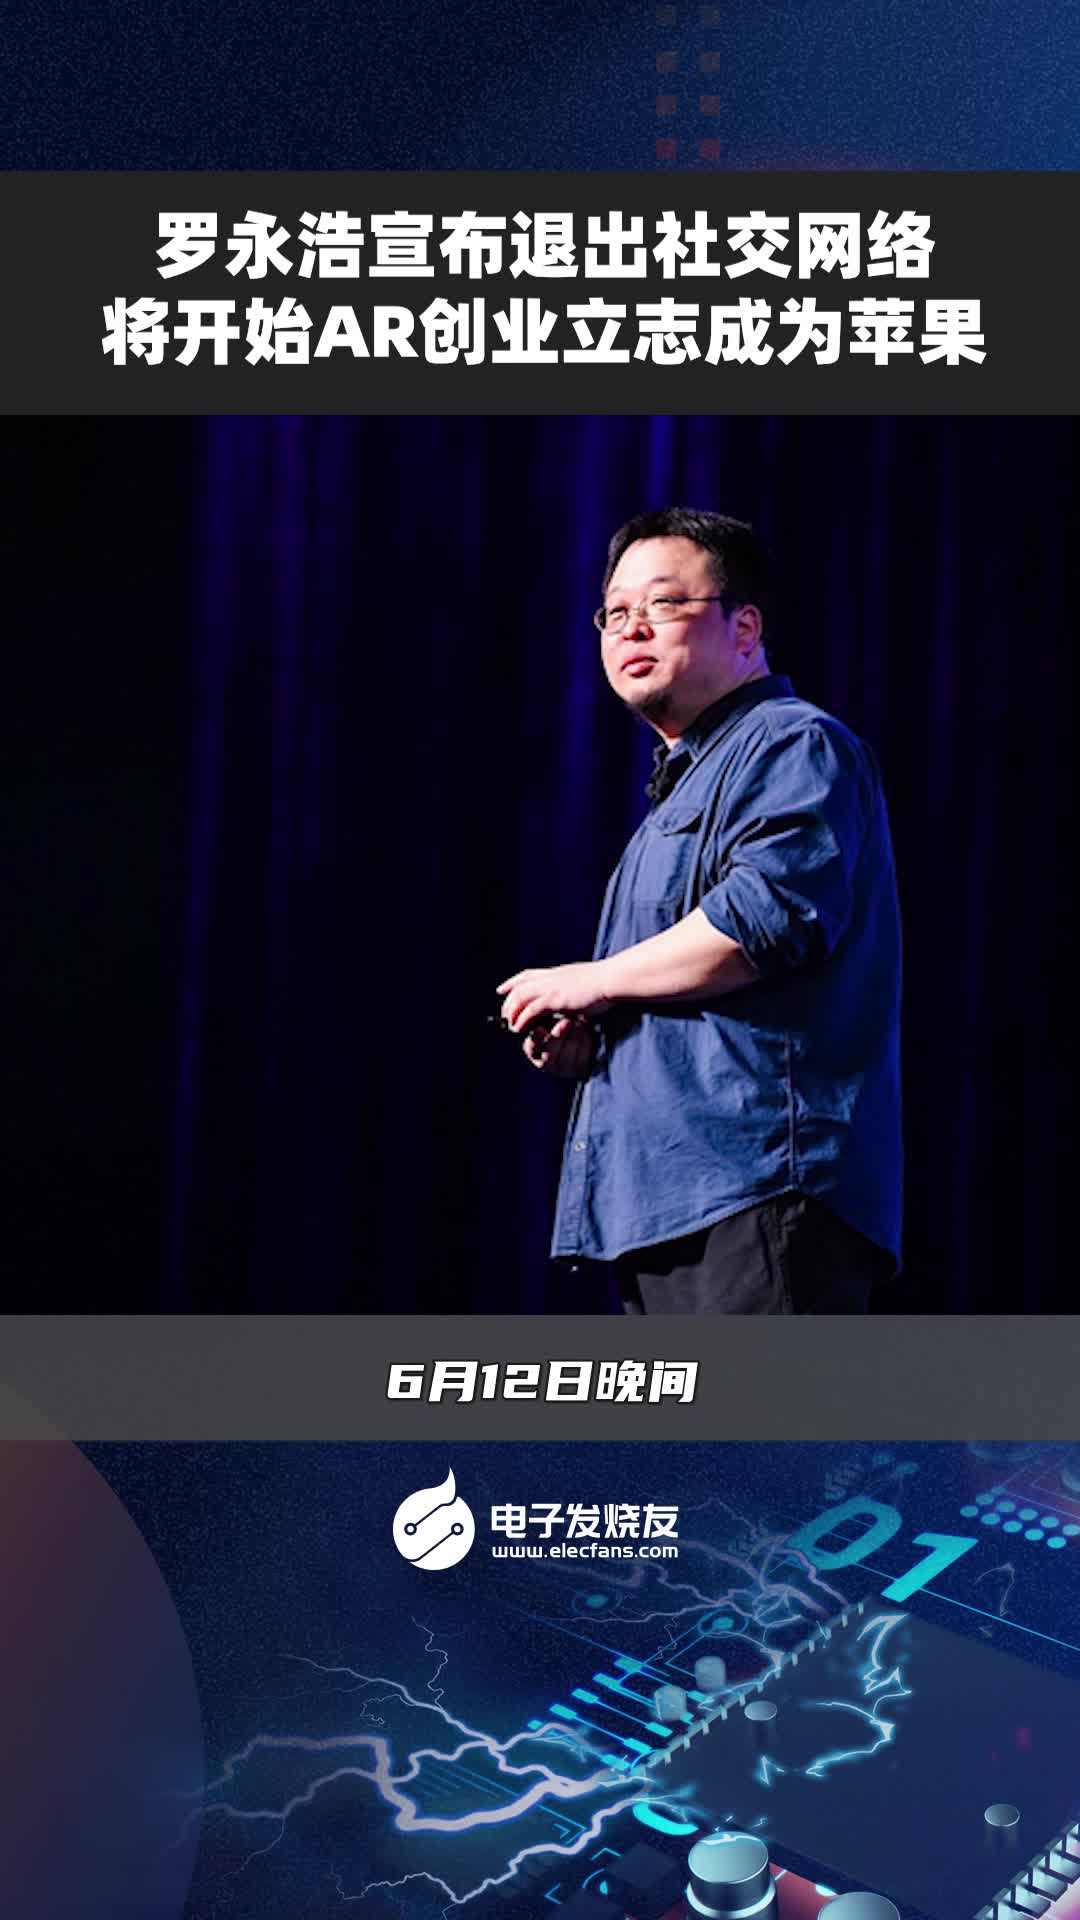 羅永浩宣布退出社交網絡，將開始AR創業立志成為蘋果